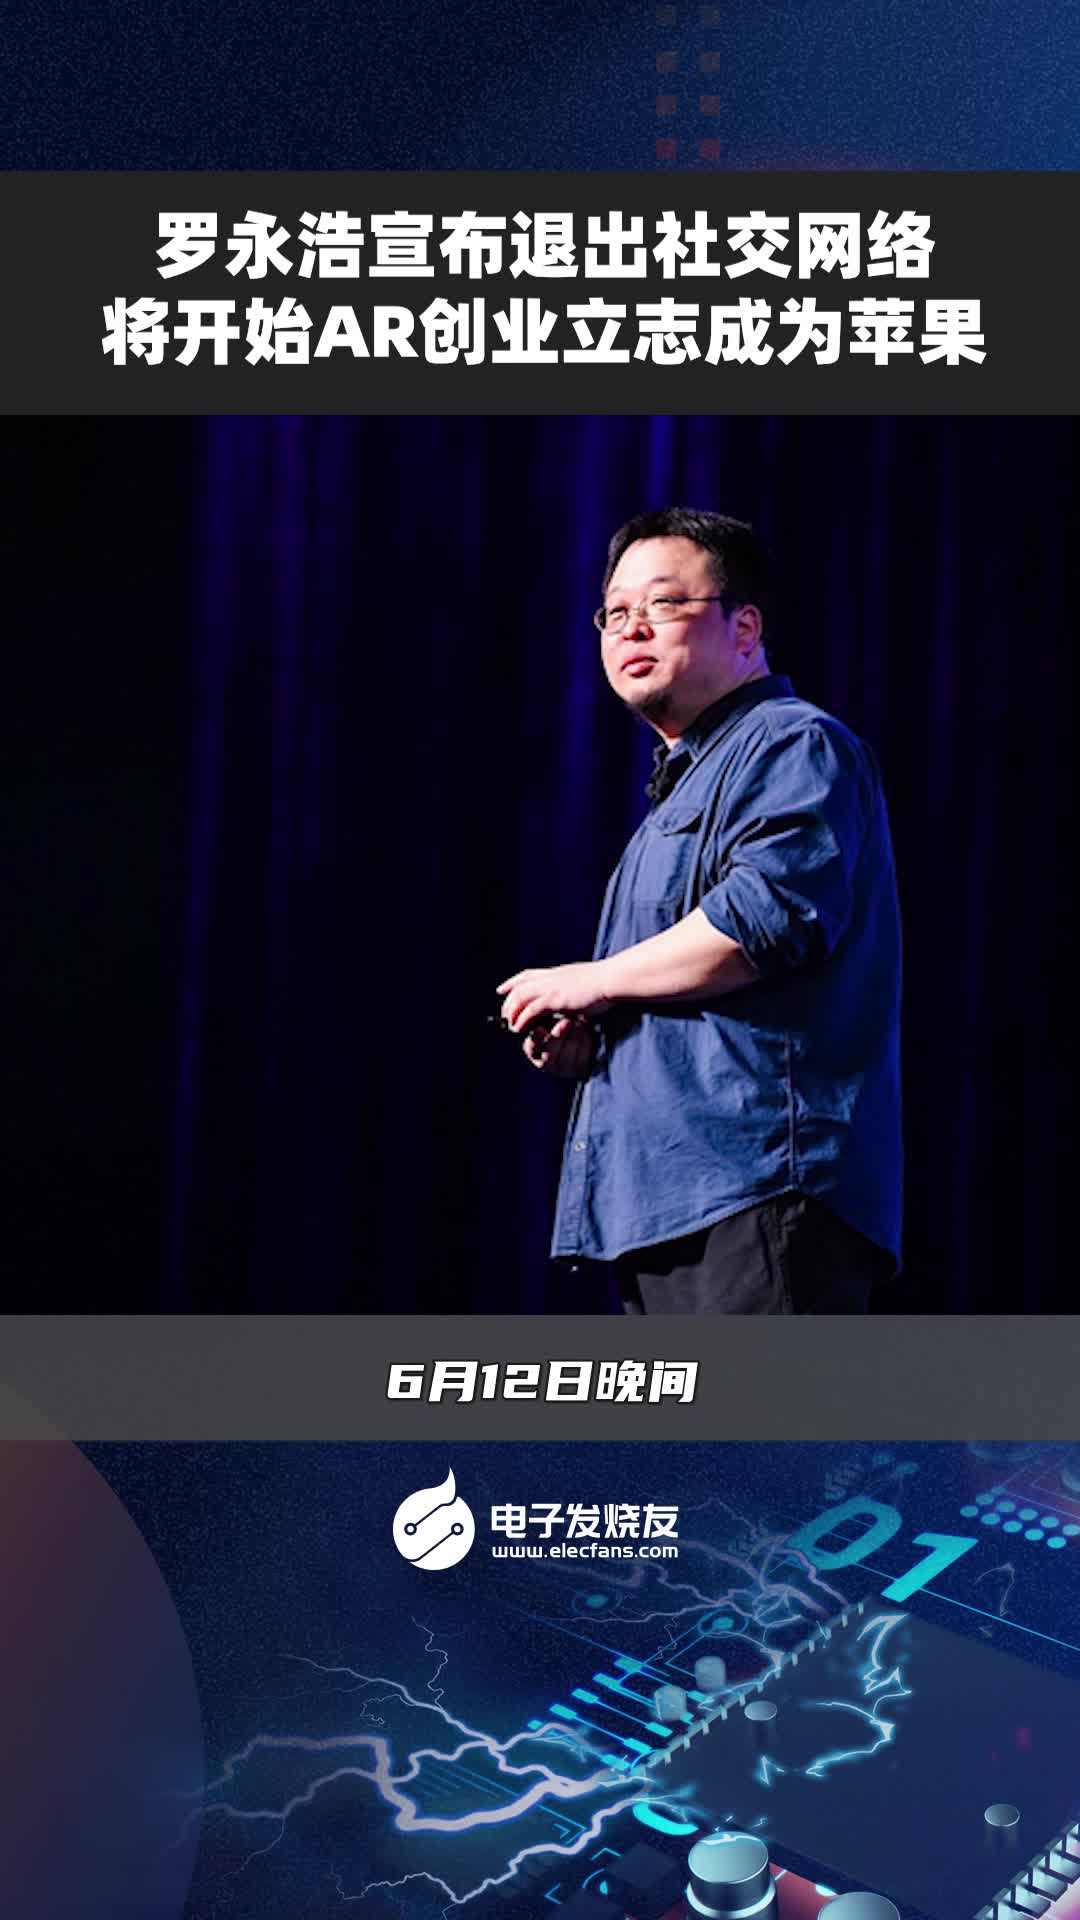 羅永浩宣布退出社交網絡，將開始AR創業立志成為蘋果